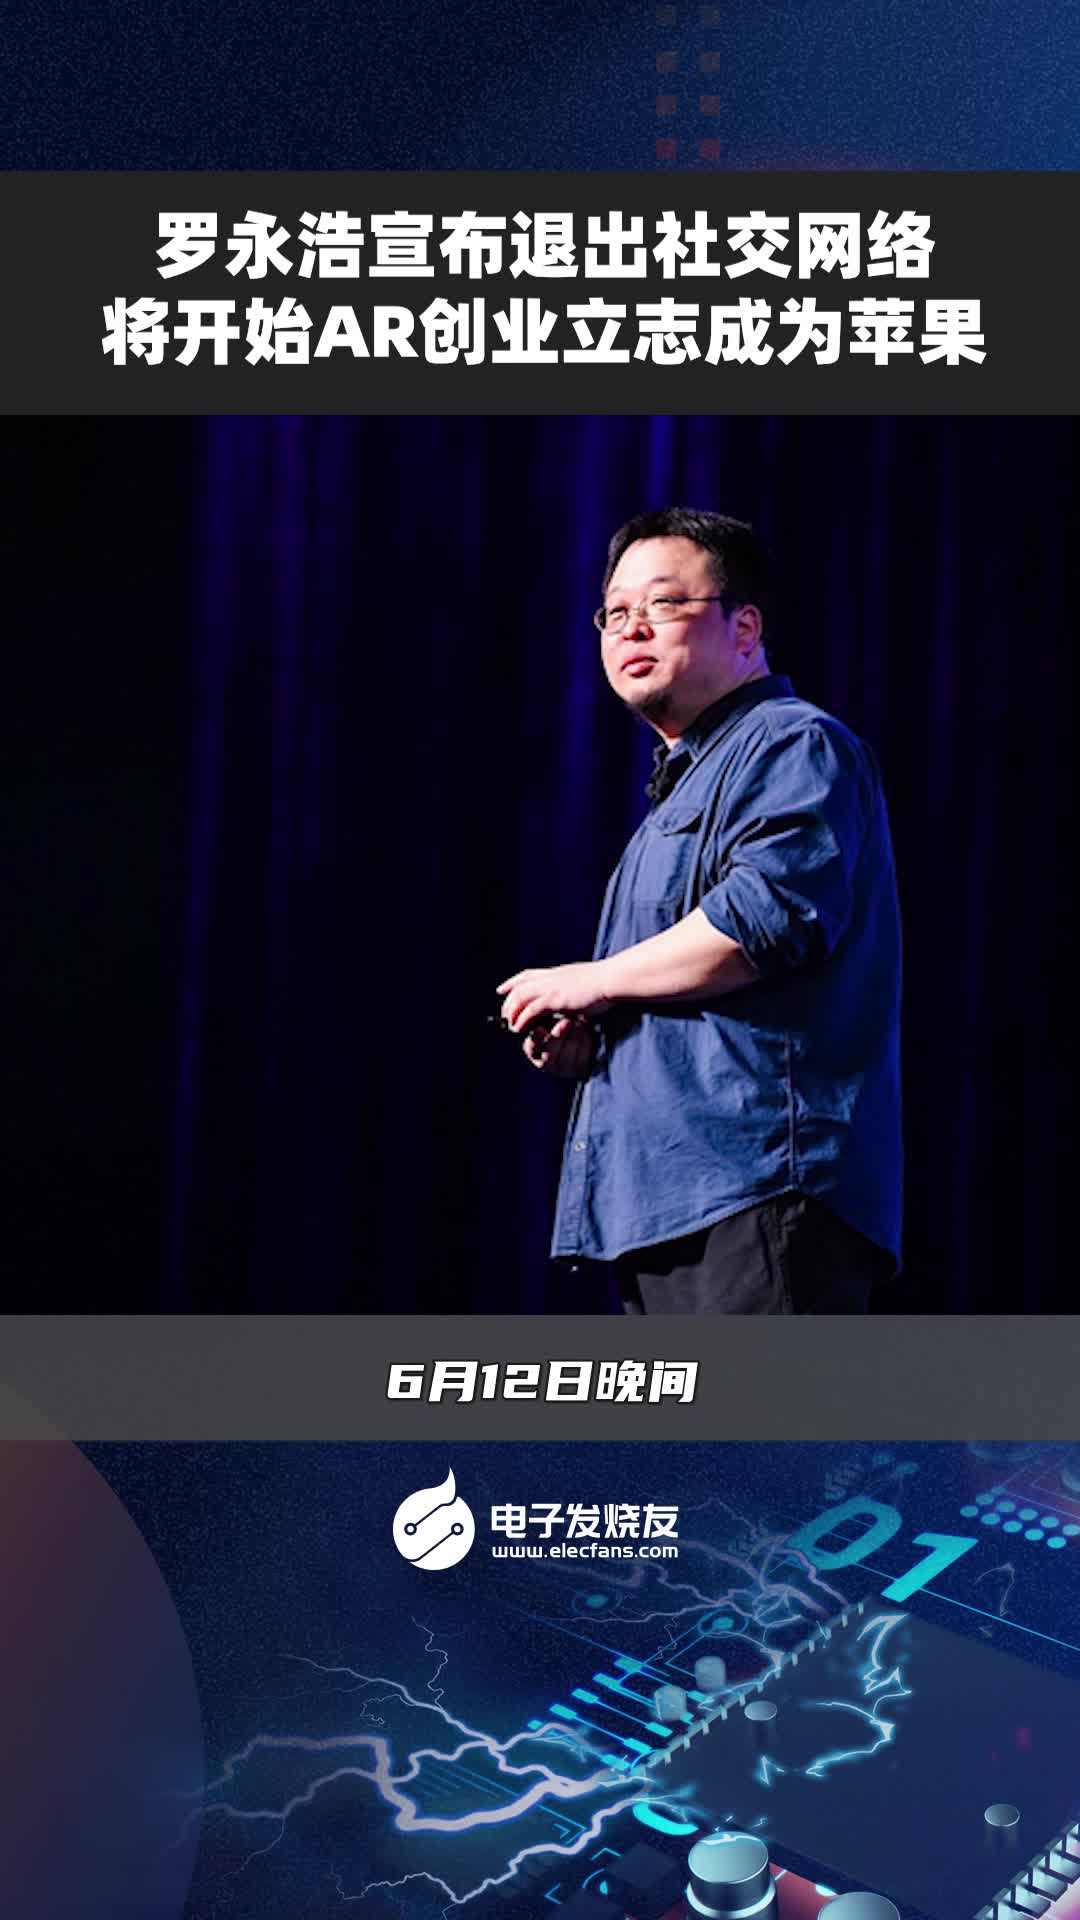 羅永浩宣布退出社交網絡，將開始AR創業立志成為蘋果